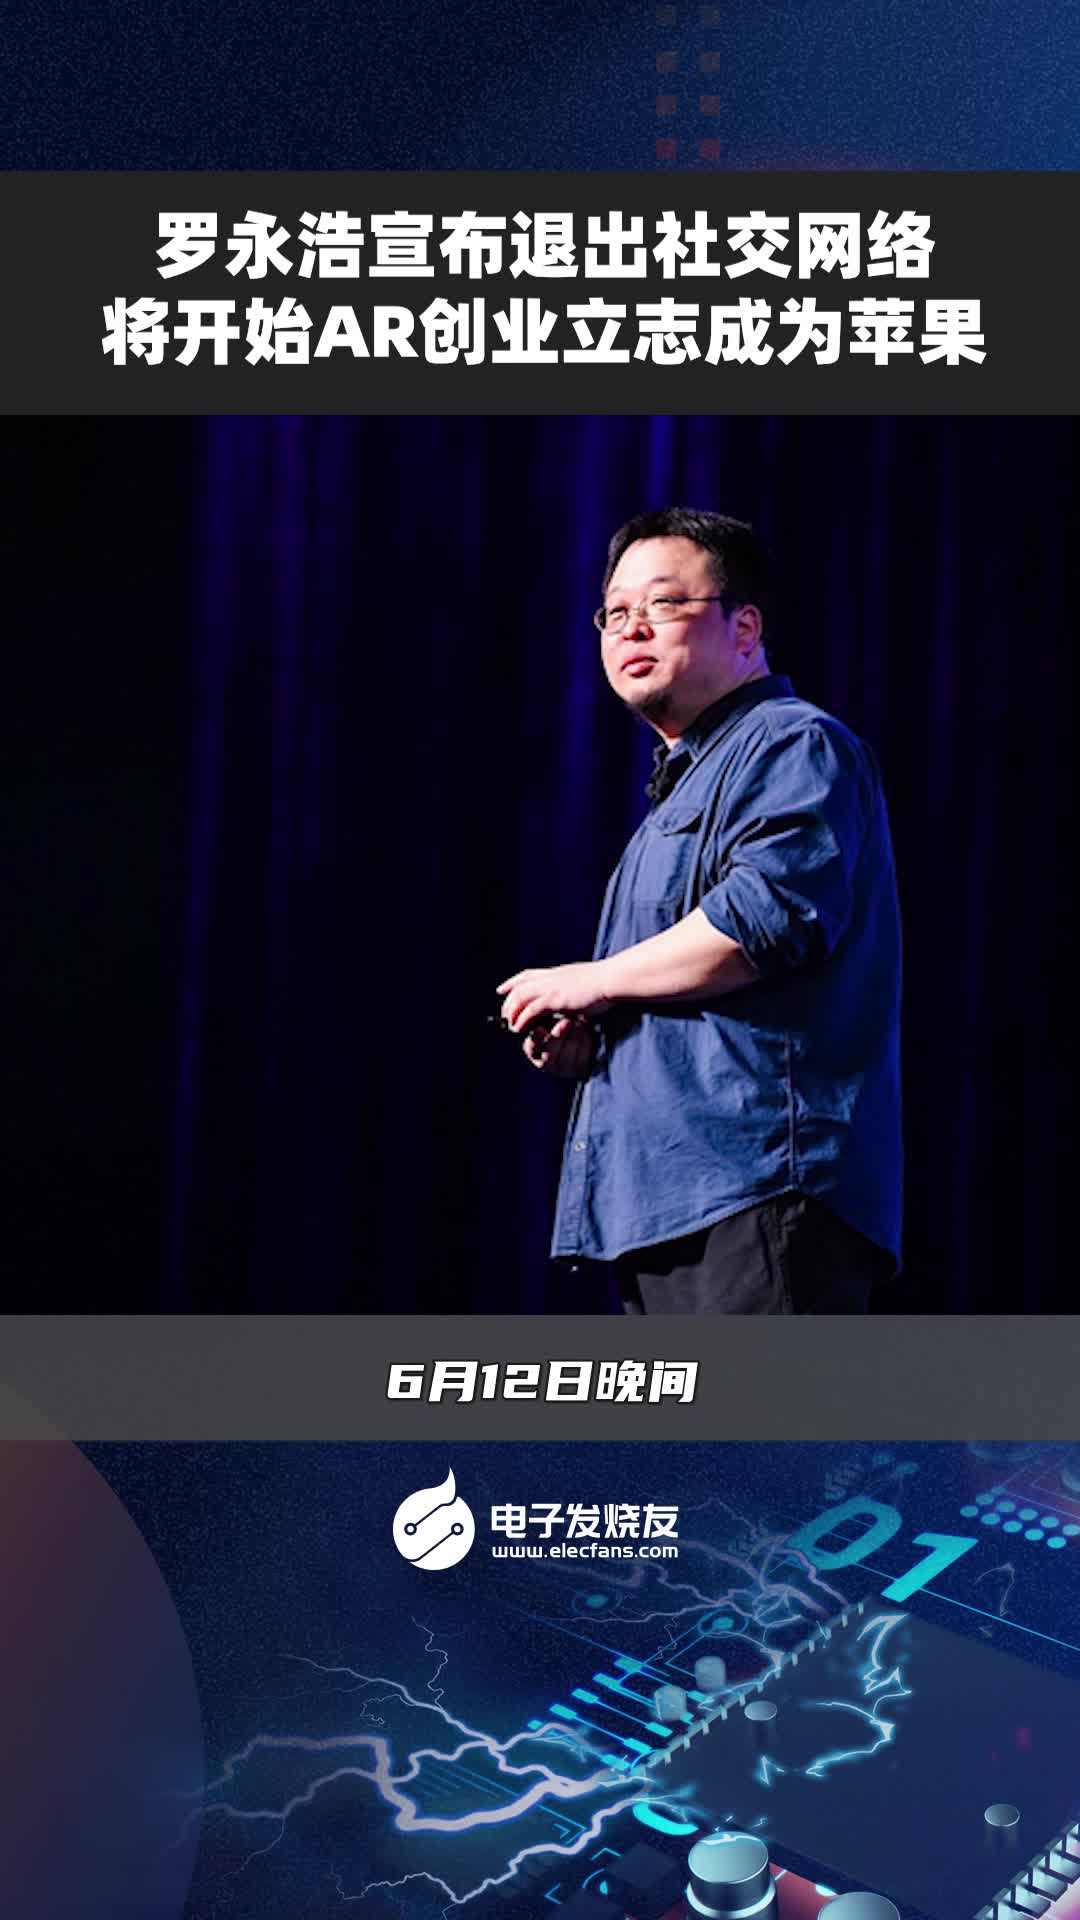 羅永浩宣布退出社交網絡，將開始AR創業立志成為蘋果